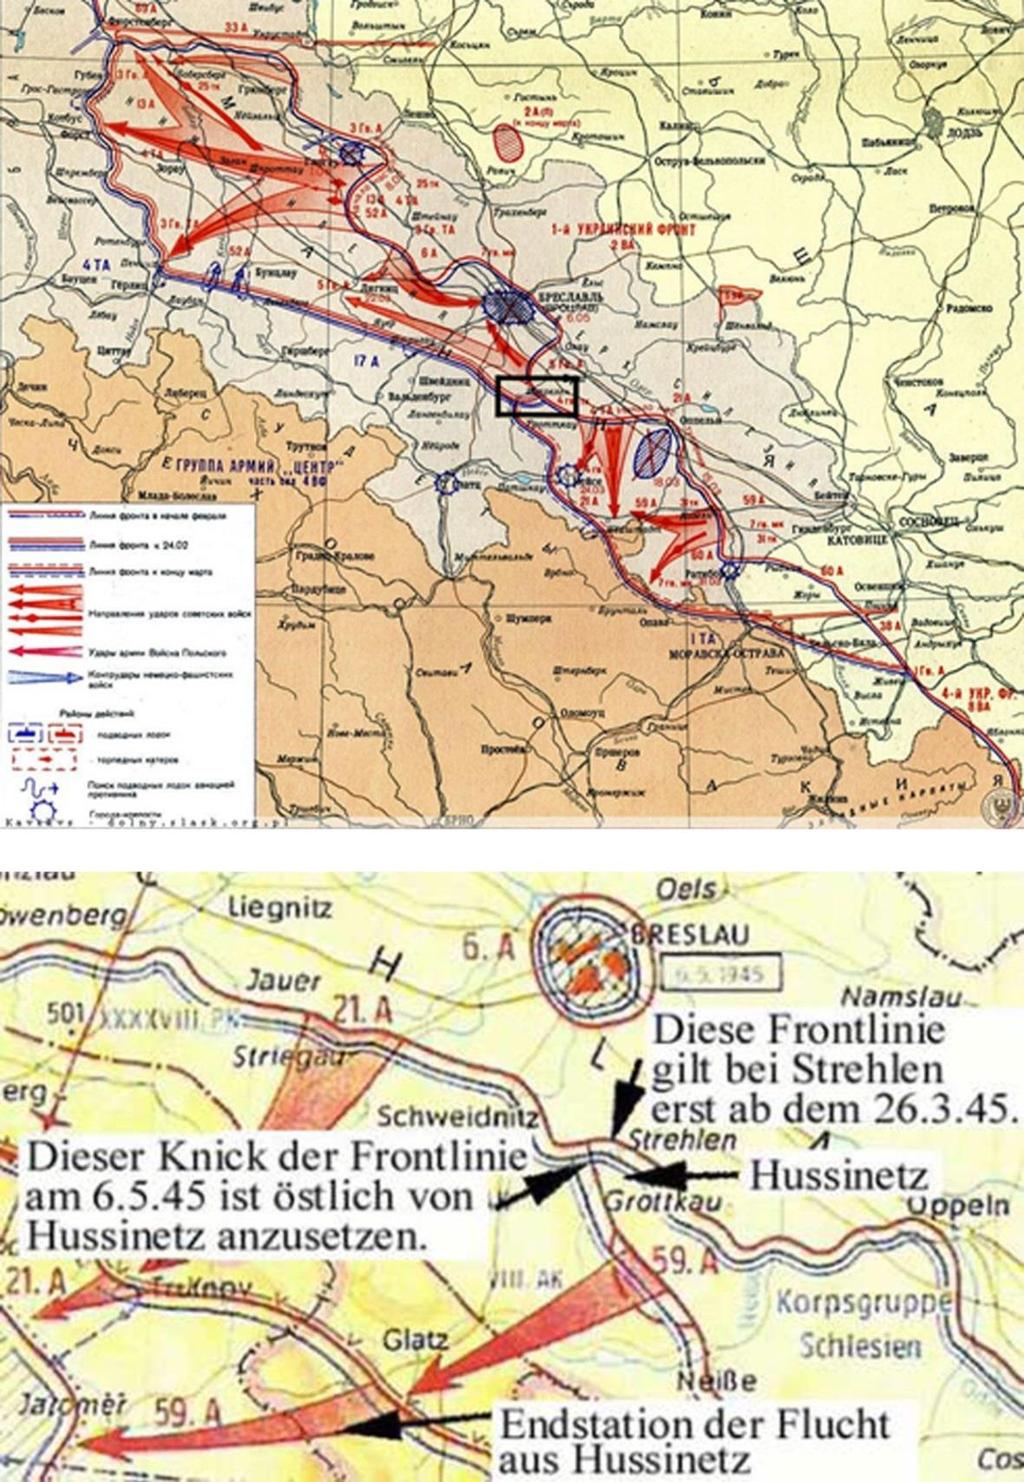 Bild 1: In der Zeit Februar/März 1945 wurden in Schlesien durch die Rote Armee Breslau eingekreist und die Operationen in Richtung Westen (Görlitz/Jauer) bzw. im Süden (Oppeln/Neisse) abgeschlossen.